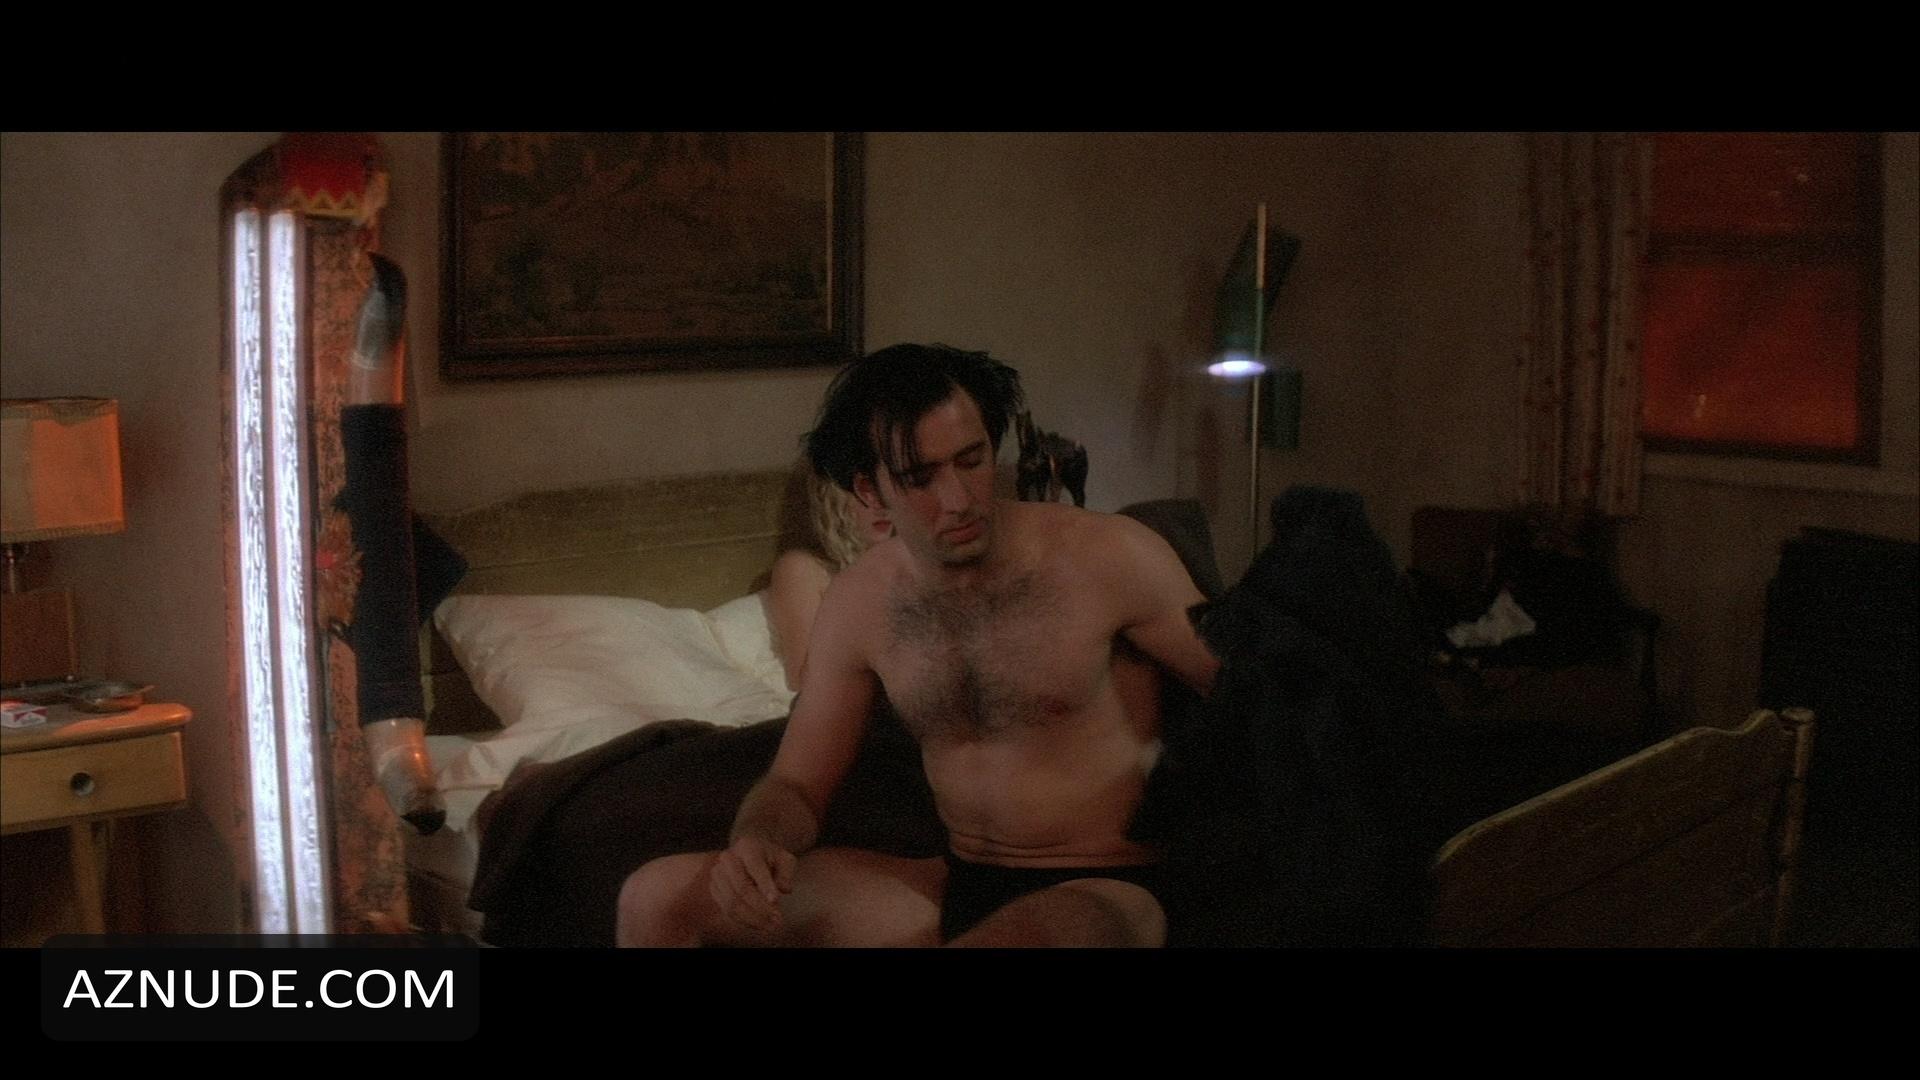 Nicolas Cage Nude Aznude Men